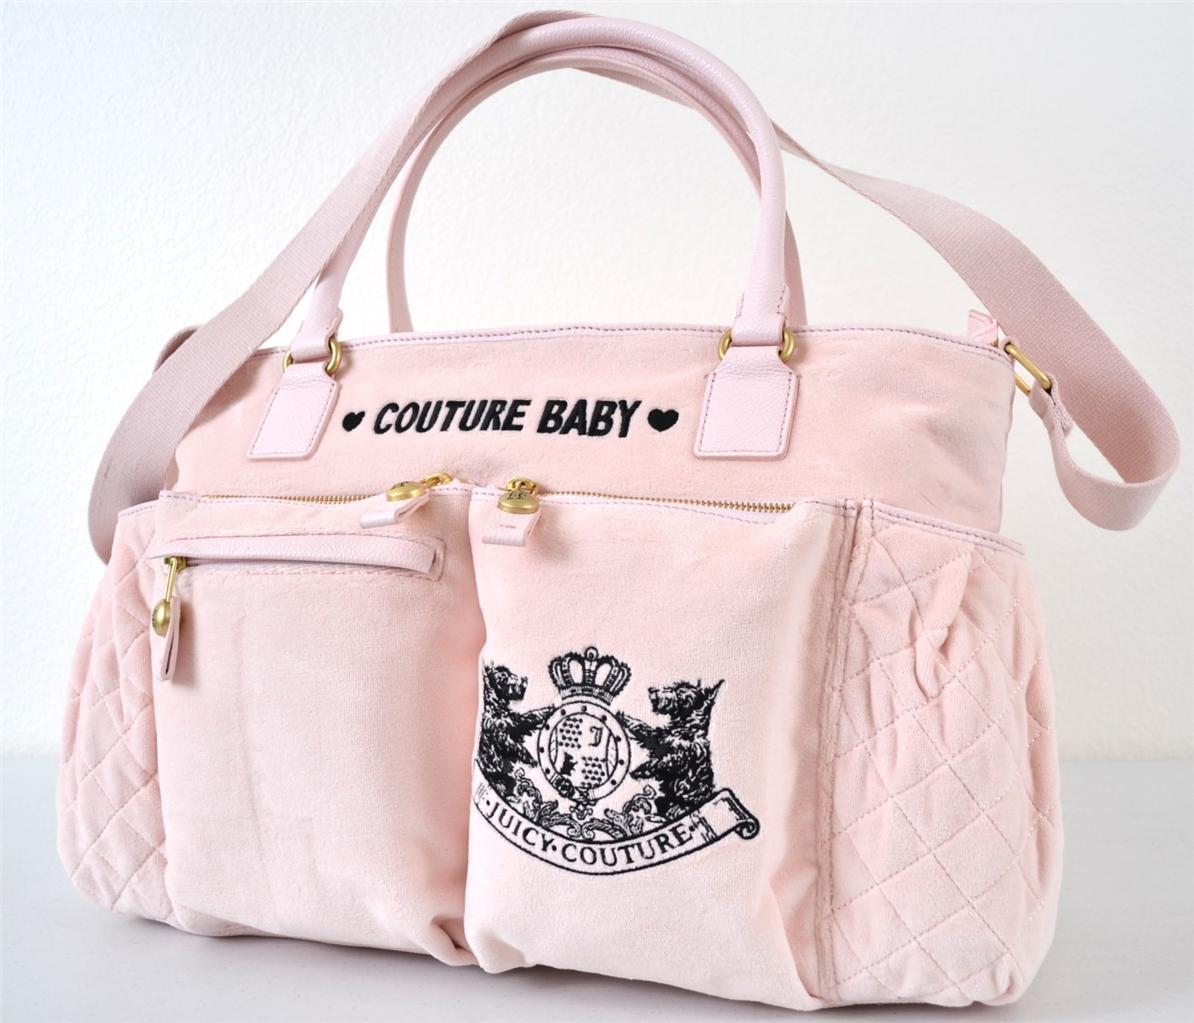 Top 10 Baby Bags of 2013 | eBay